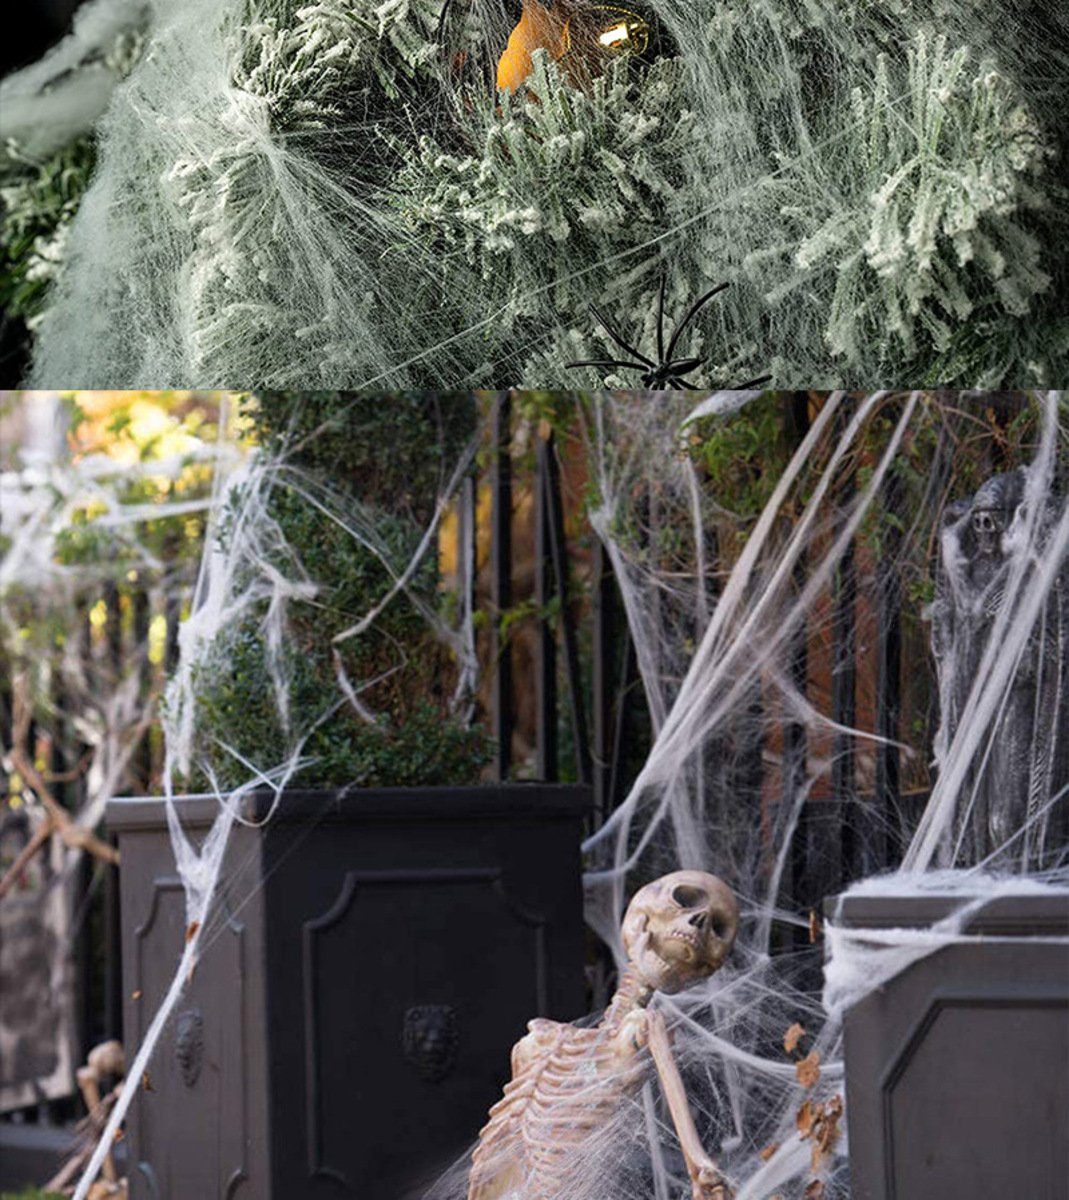 Halloween PRECORN Deko Spinnennetz Dekoration mit Wanddekoobjekt - Spinnen Fasching 20 Party